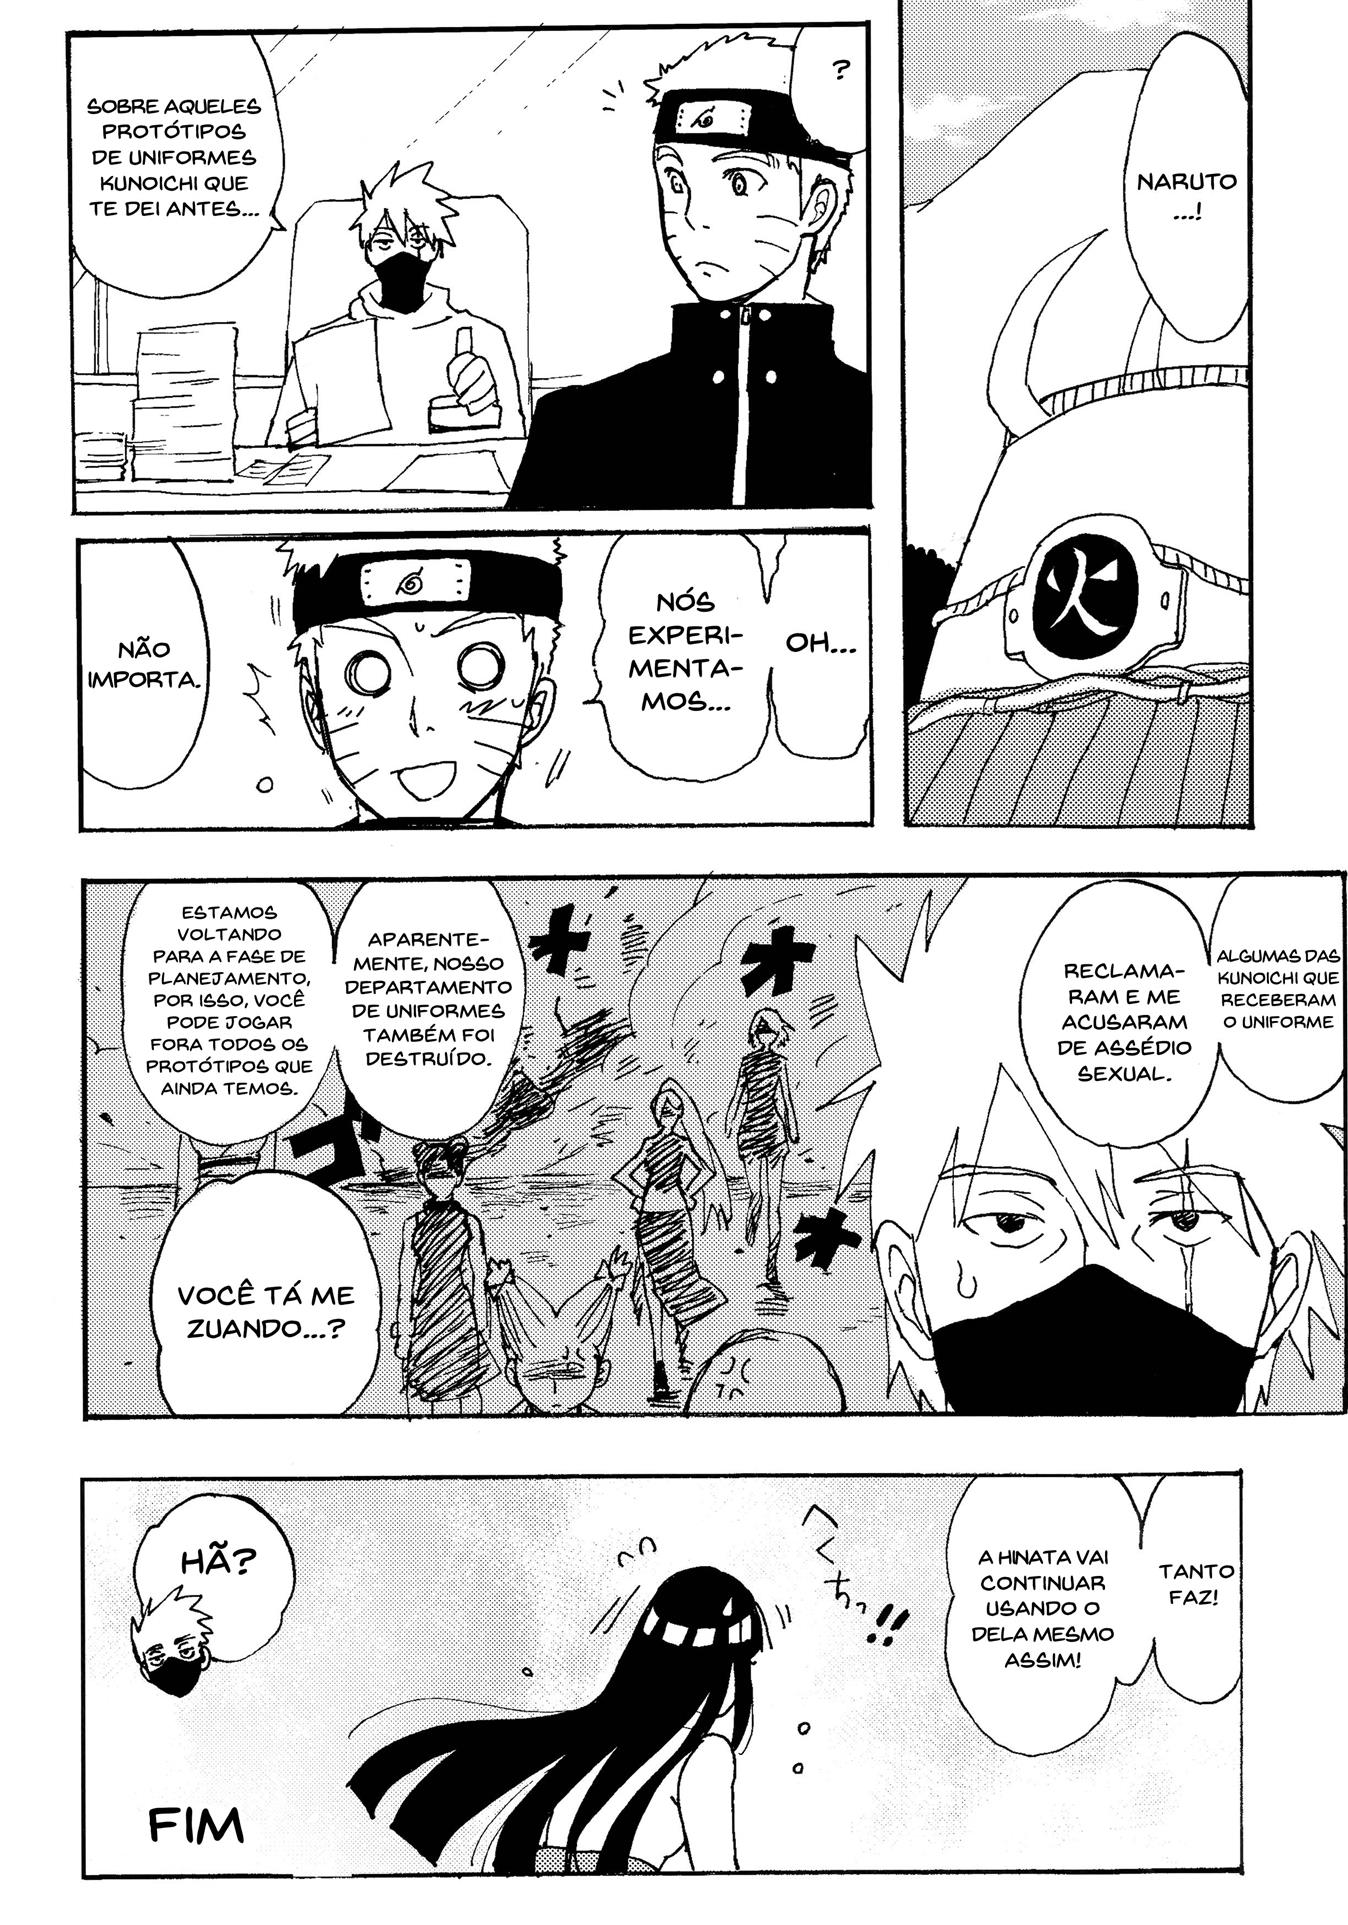 Naruto Hentai: Hinata provando o novo uniforme